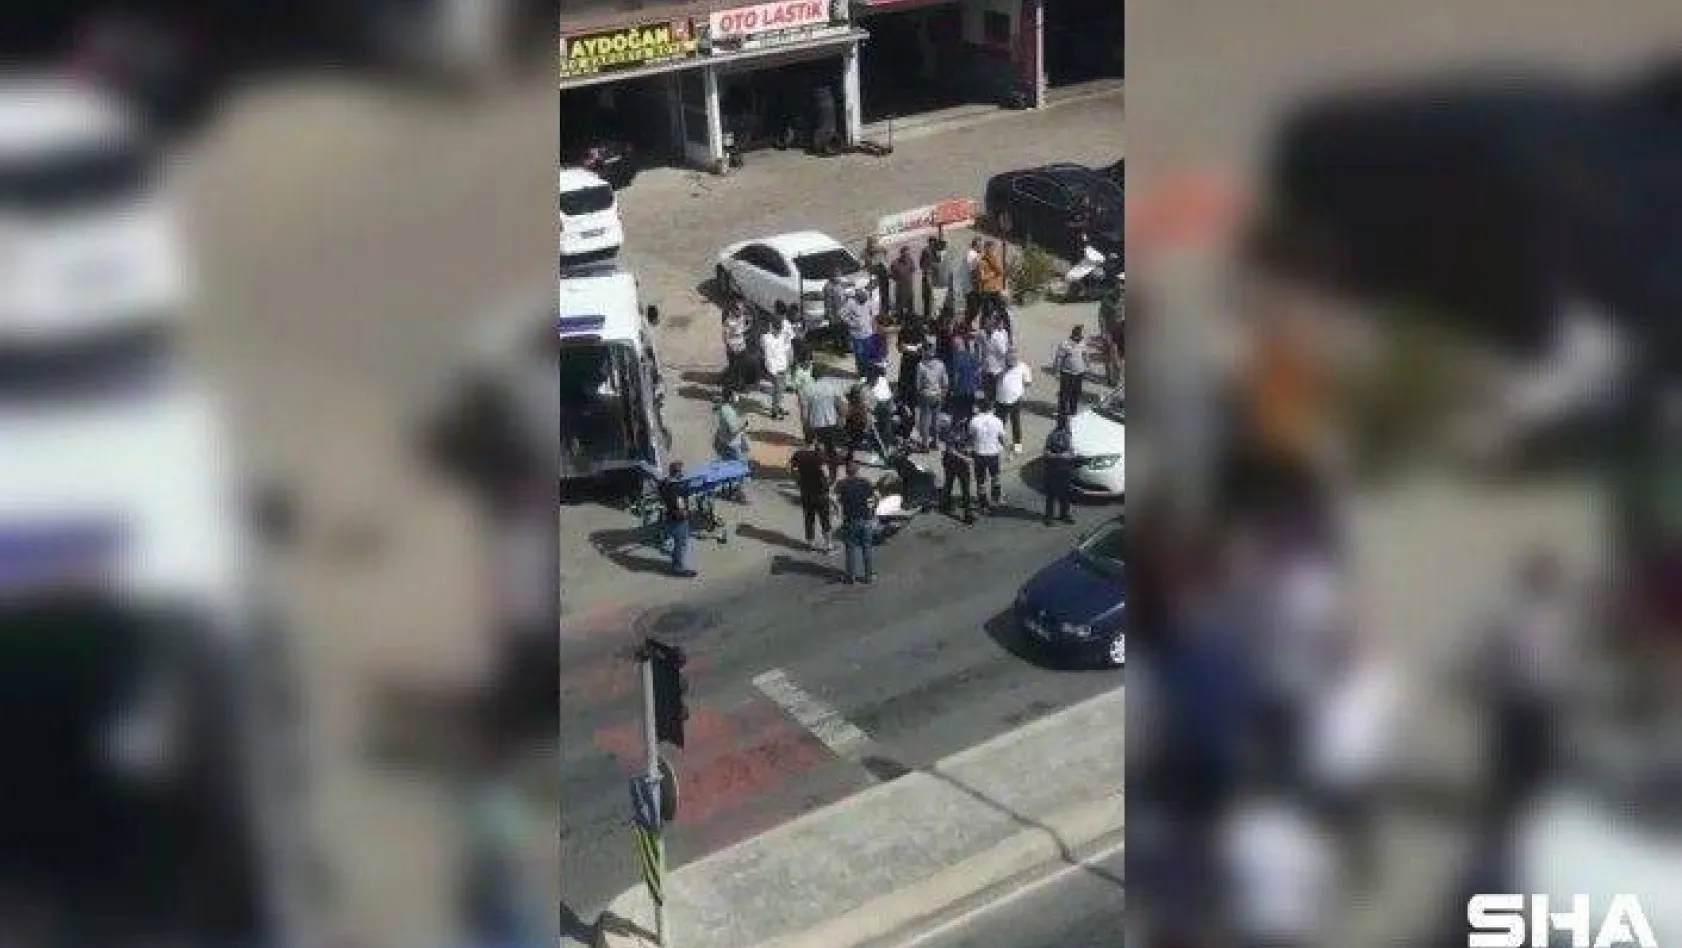 Arnavutköy'de yolun karşısına geçmeye çalışan çocuğa otomobil çarptı